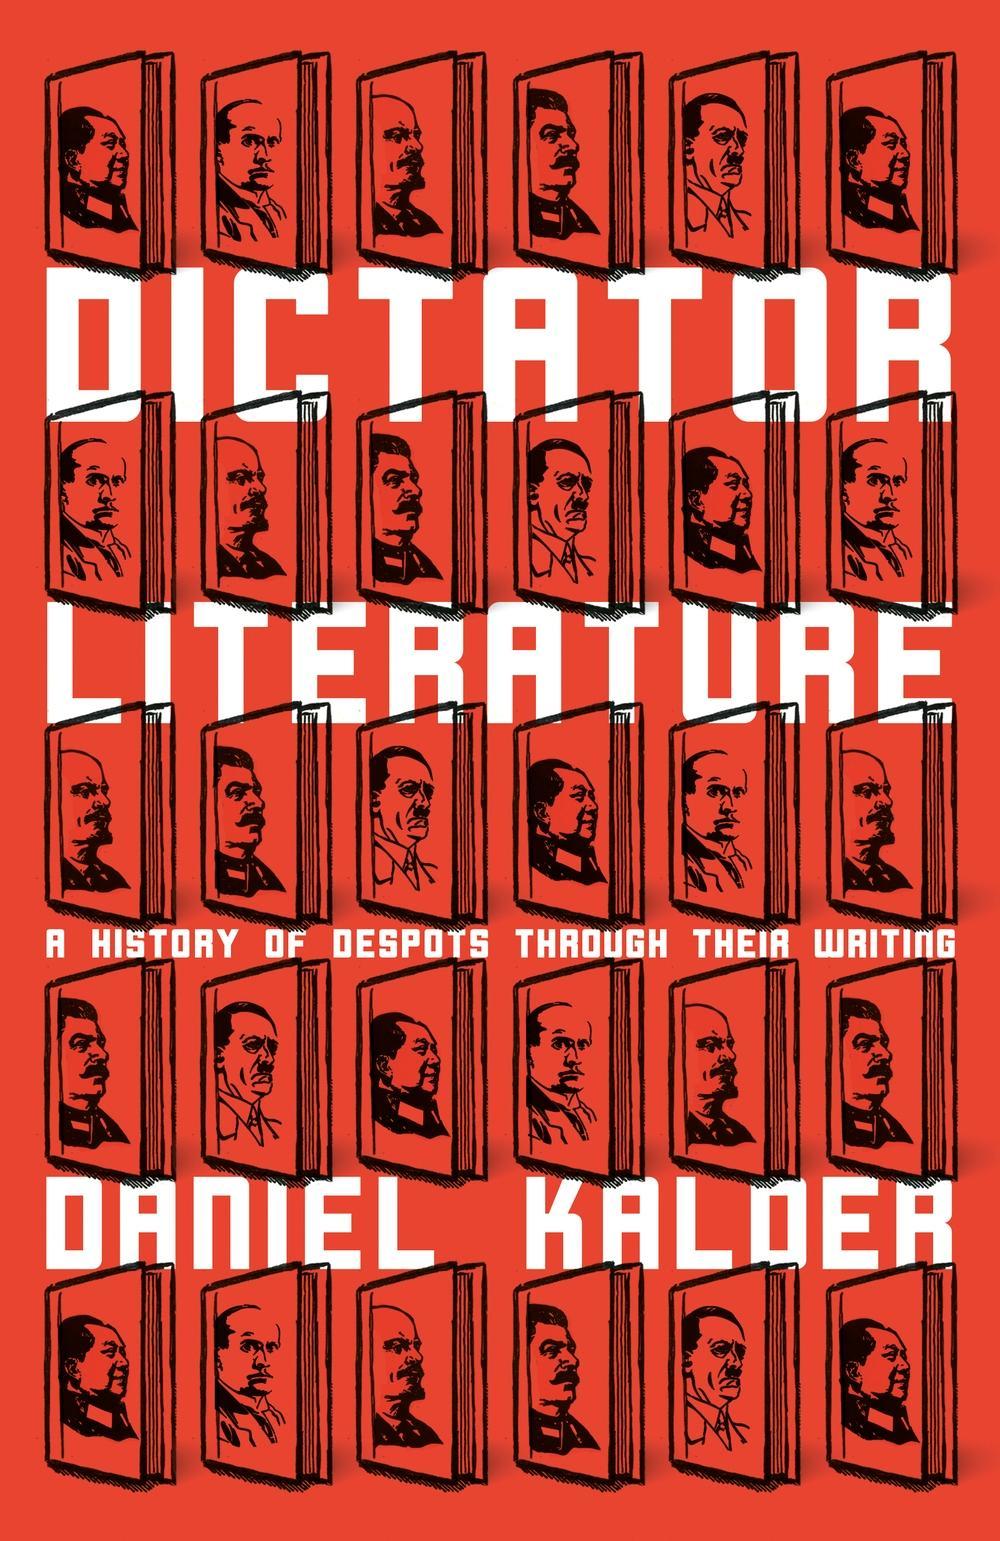 Dictator Literature